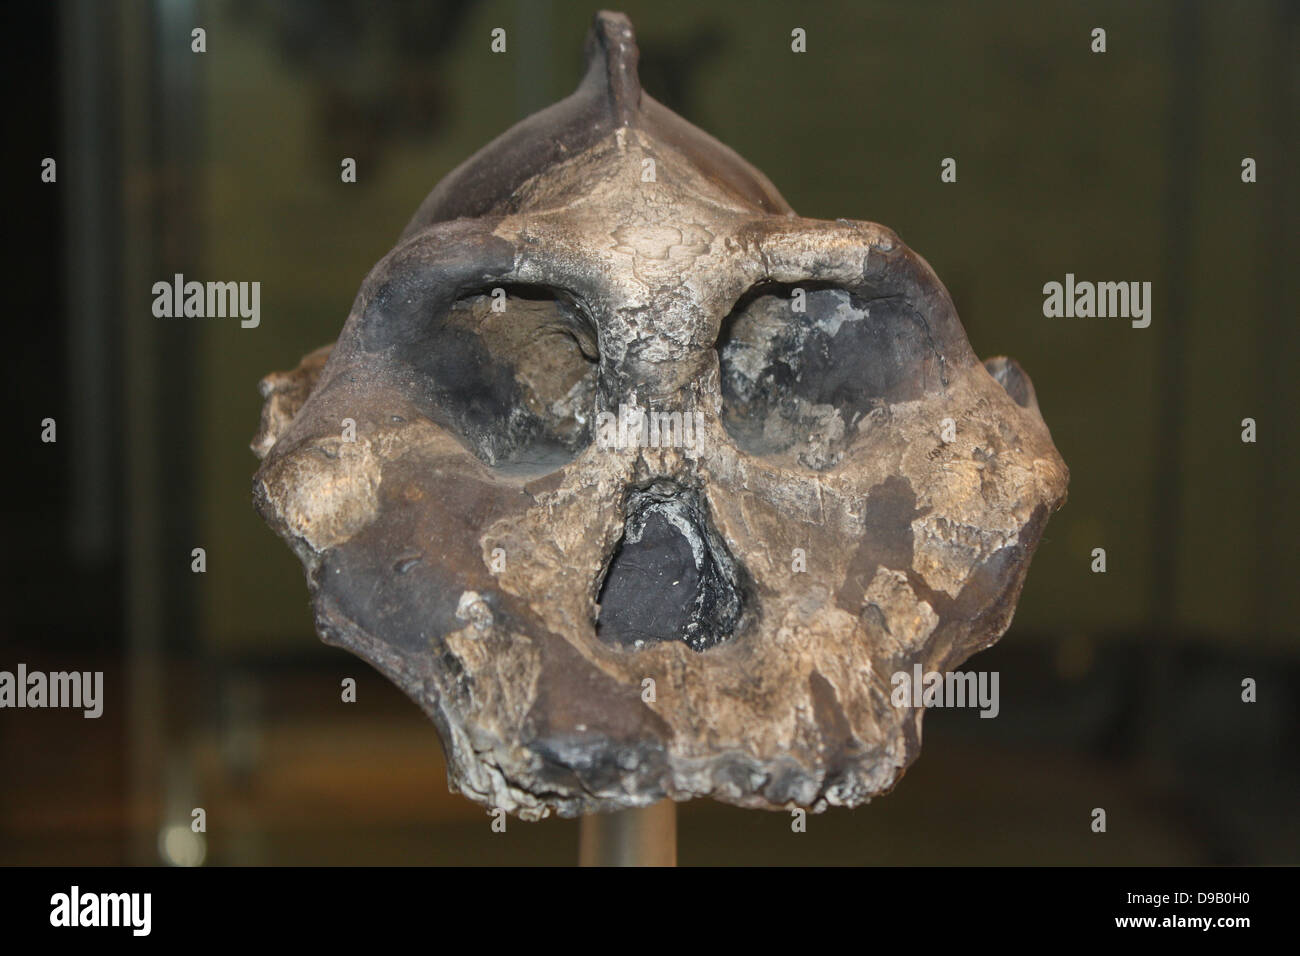 Propaggine evolutivo. Questo cordolo prominente lungo la parte superiore del cranio di Paranthropus aethiopicus era per ancorare il suo forte mascella muscoli. Una ganascia di pesanti e grandi denti probabilmente consentito di masticare dura, piante legnose. Che vivono in Kenya tra 2.3-2,7 milioni di anni fa, potrebbe essere stato un antenato del robusto australopithecines. Queste creature sono state una propaggine evolutivo che probabilmente è morto a causa di variazioni ambientali o la concorrenza mediante la nuova evoluzione della specie umana. Foto Stock